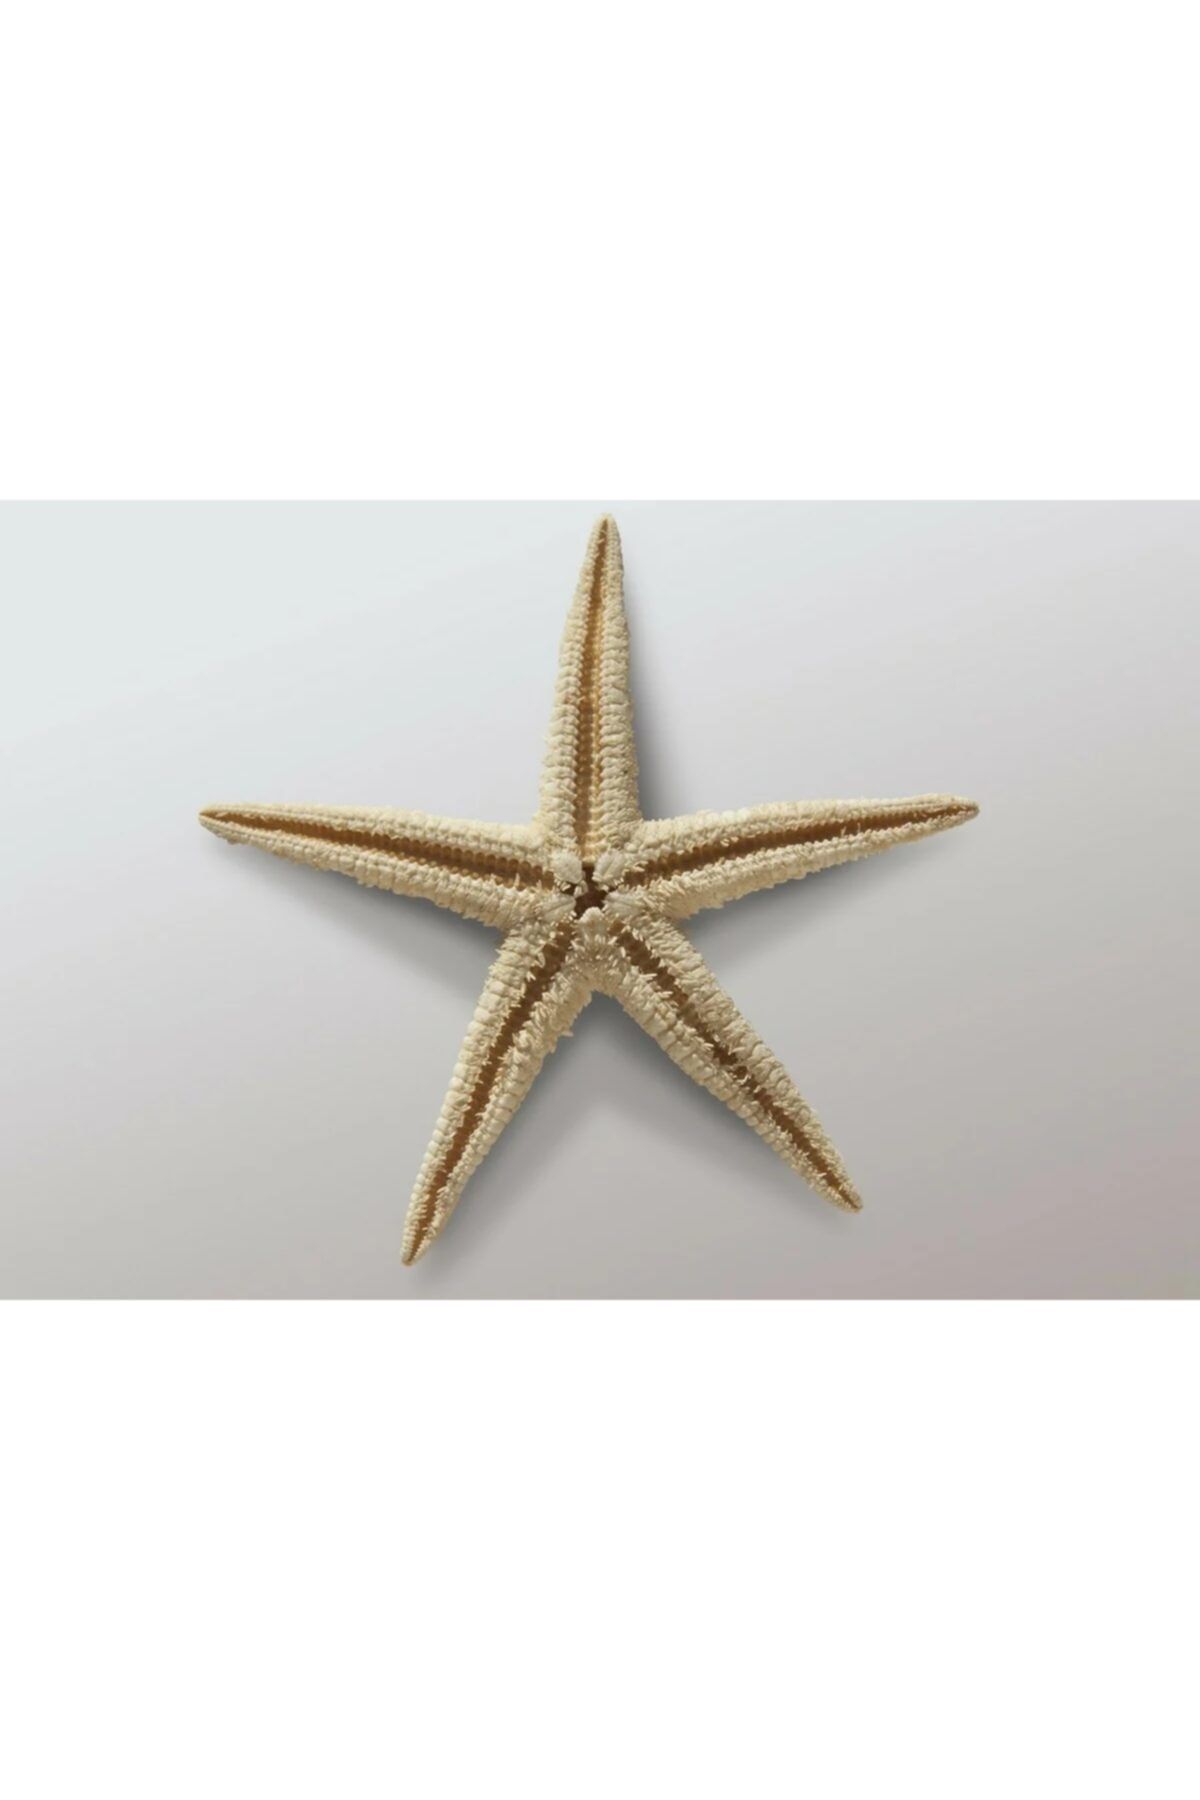 Aker Hediyelik Kurutulmuş Deniz Yıldızı 1 Adet 4x8cm Doğal Deniz Yıldızları El Işi Süsleme Ürünleri Denizyıldızı